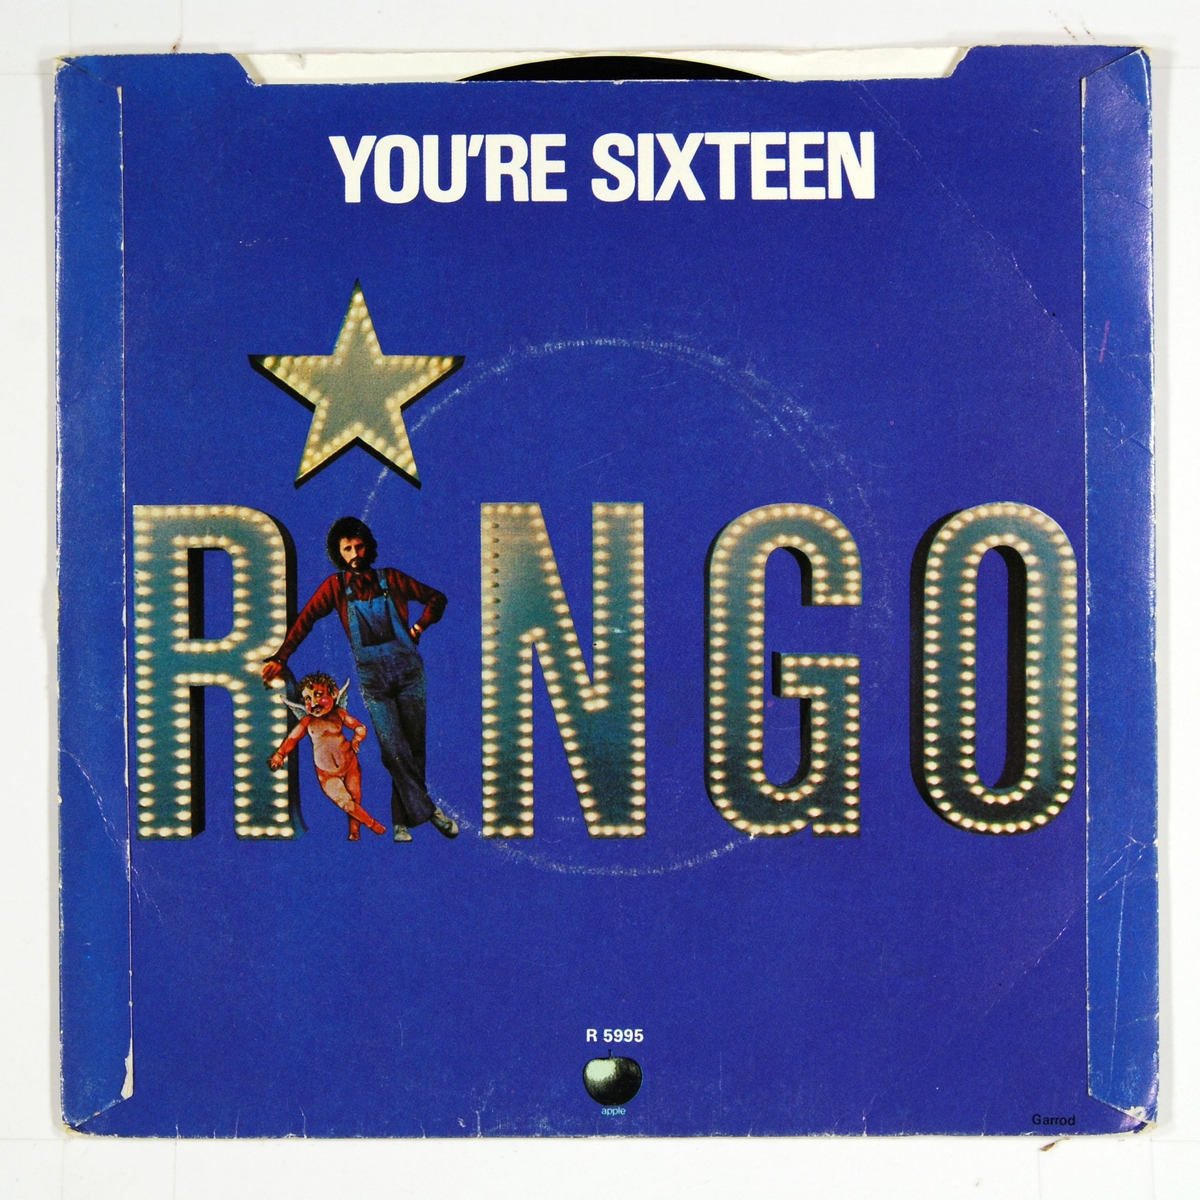 Coveret viser Ringo Starr og en liten engel/kjerub. Plateetiketten viser Ringo Starr i en stjerne.